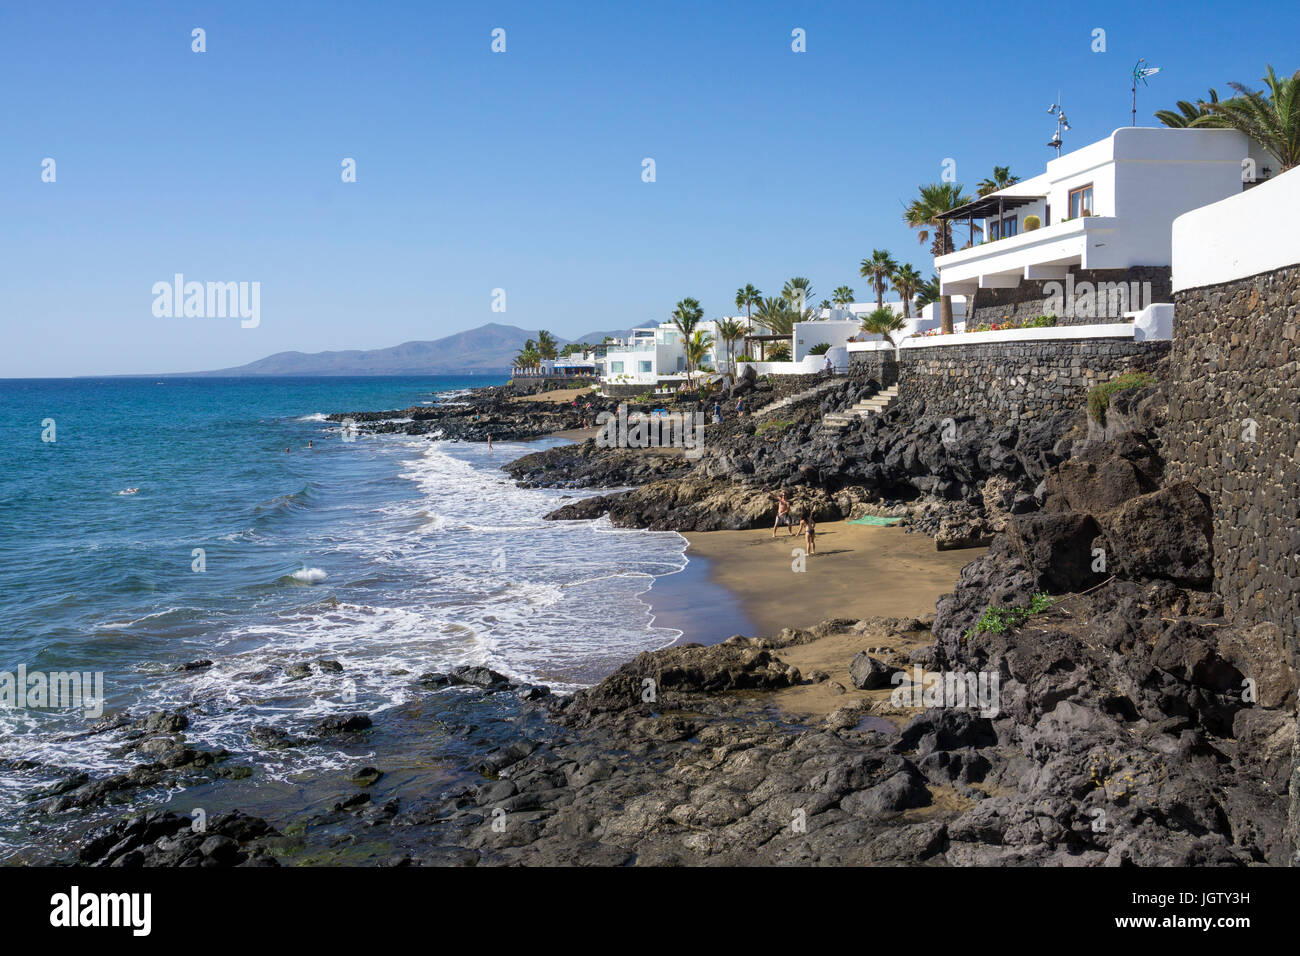 Kleine Strände zwischen Lavafelsen und unterhalb der Promenade, Puerto del Carmen, Lanzarote, Kanarische Inseln, Spanien, Europa Stockfoto